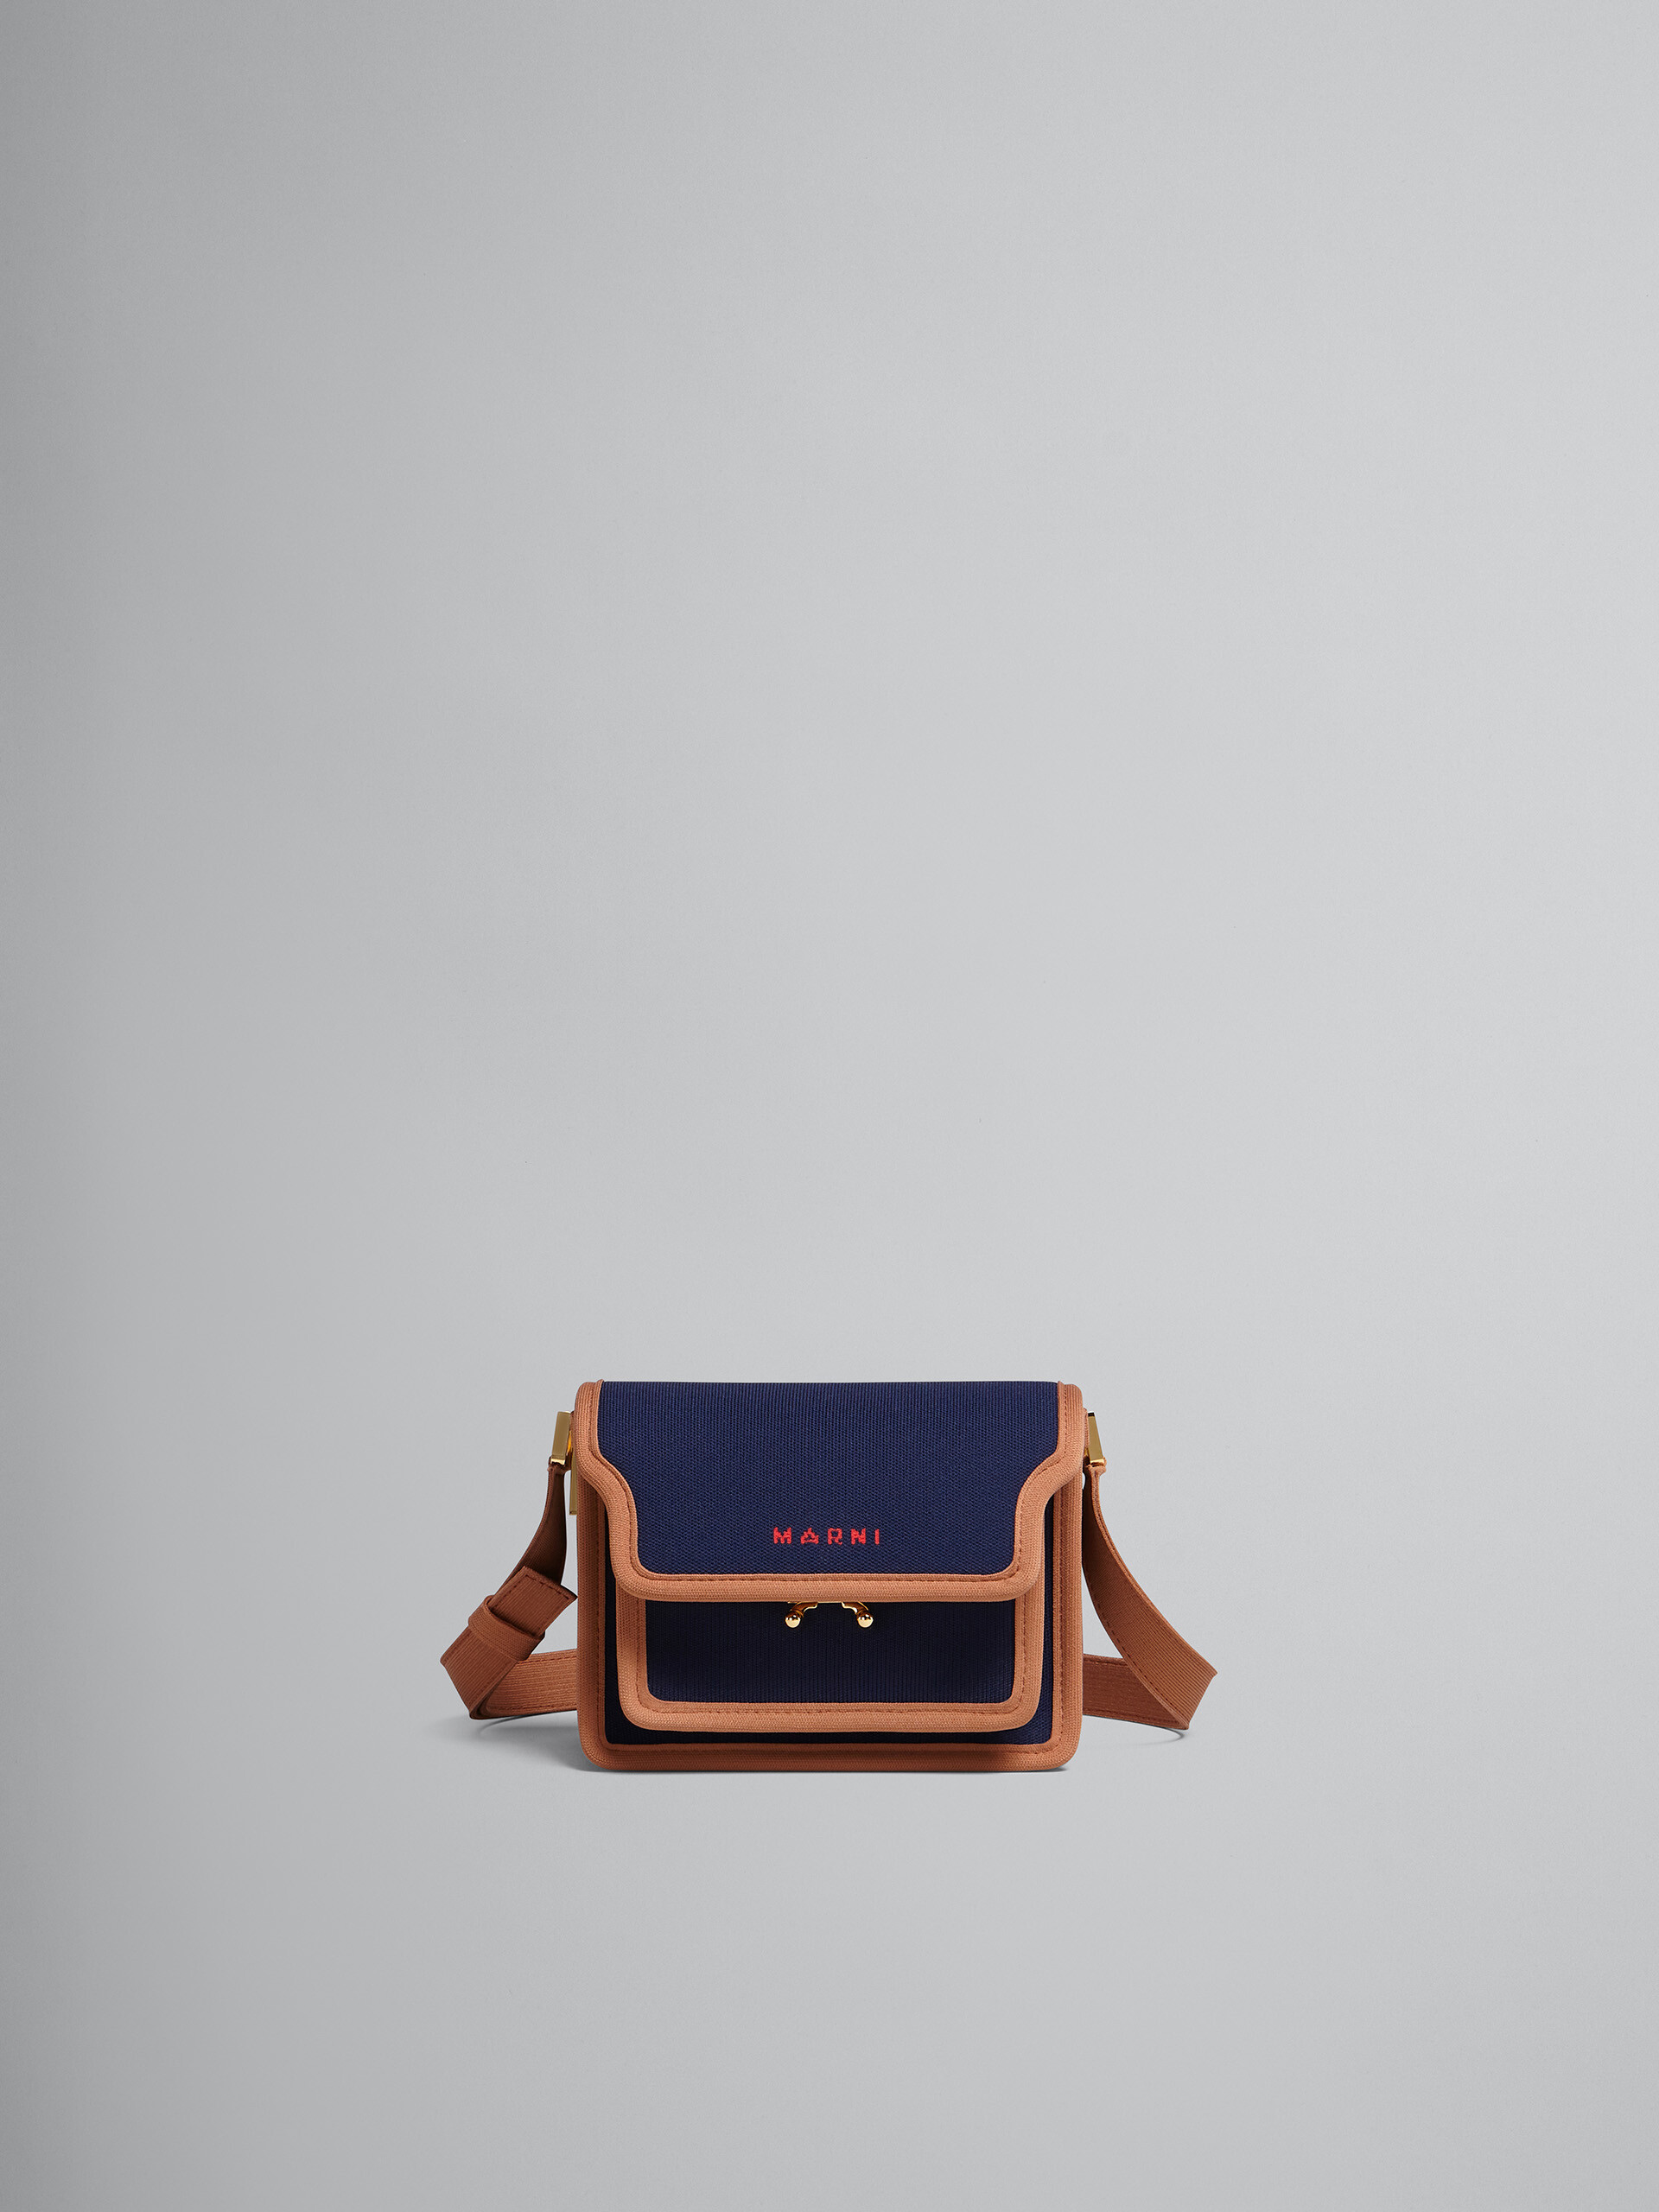 TRUNK SOFT mini bag in blue and brown jacquard - Shoulder Bag - Image 1